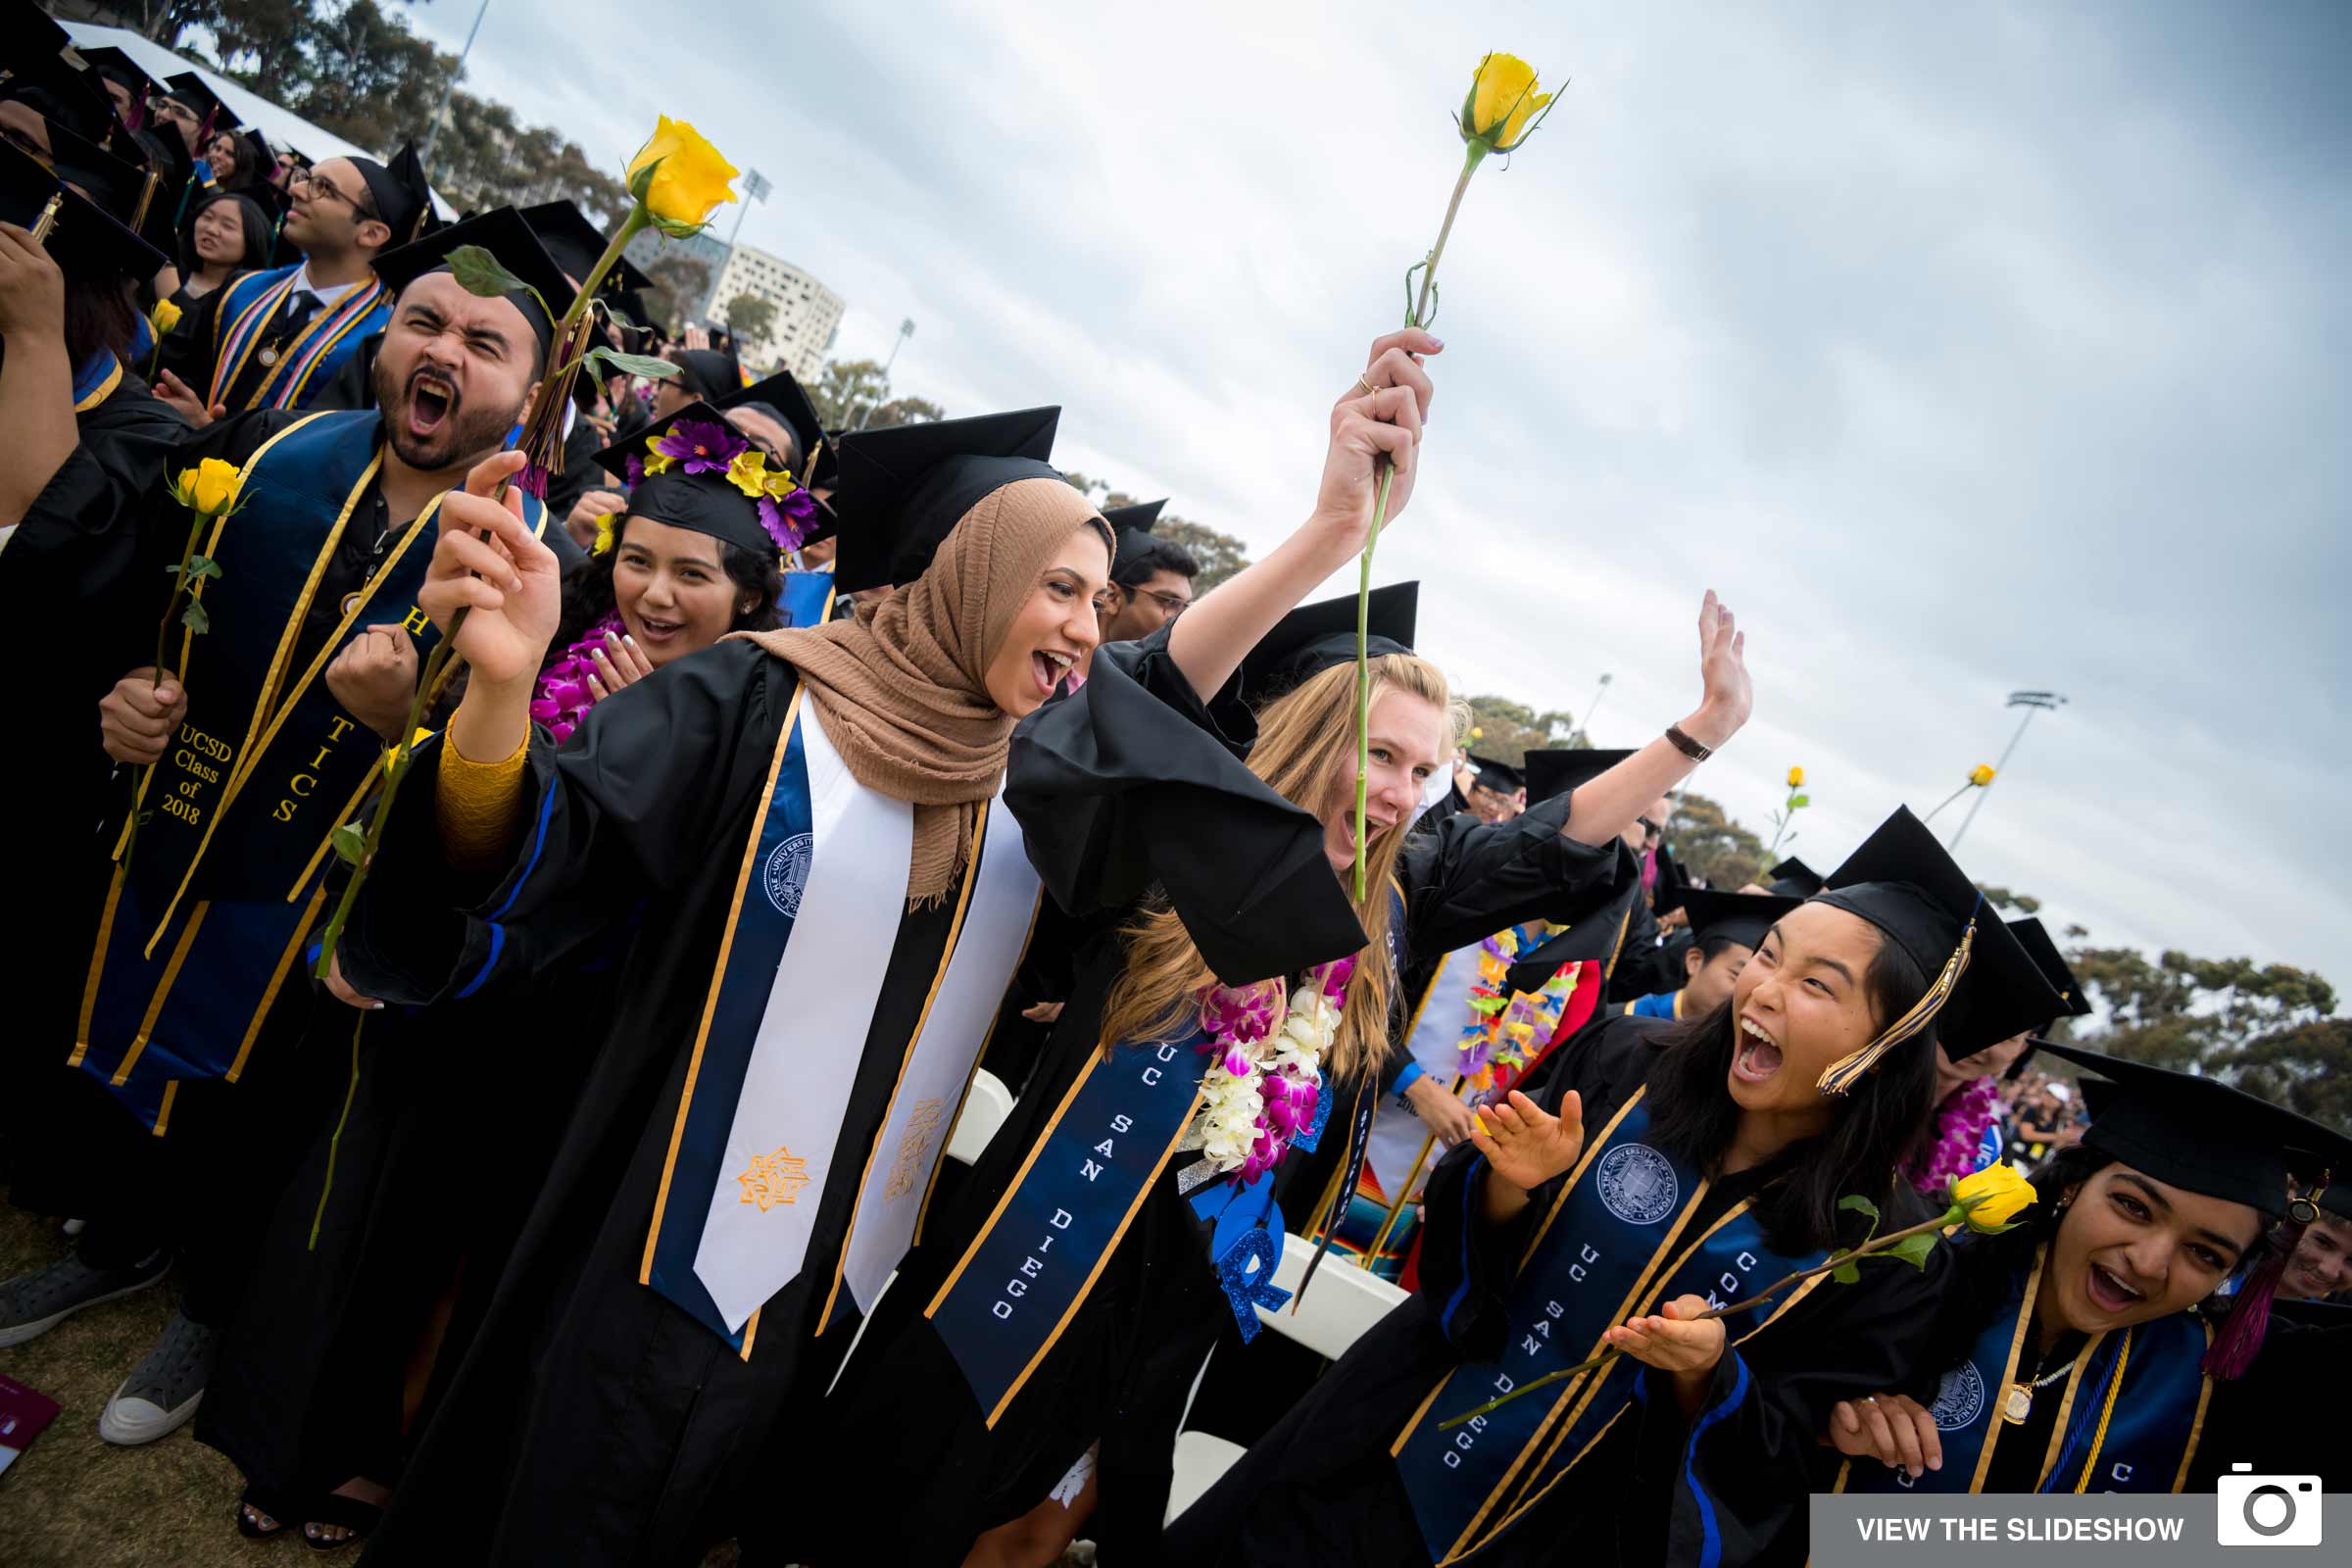 UC San Diego 2018 Commencement graduates